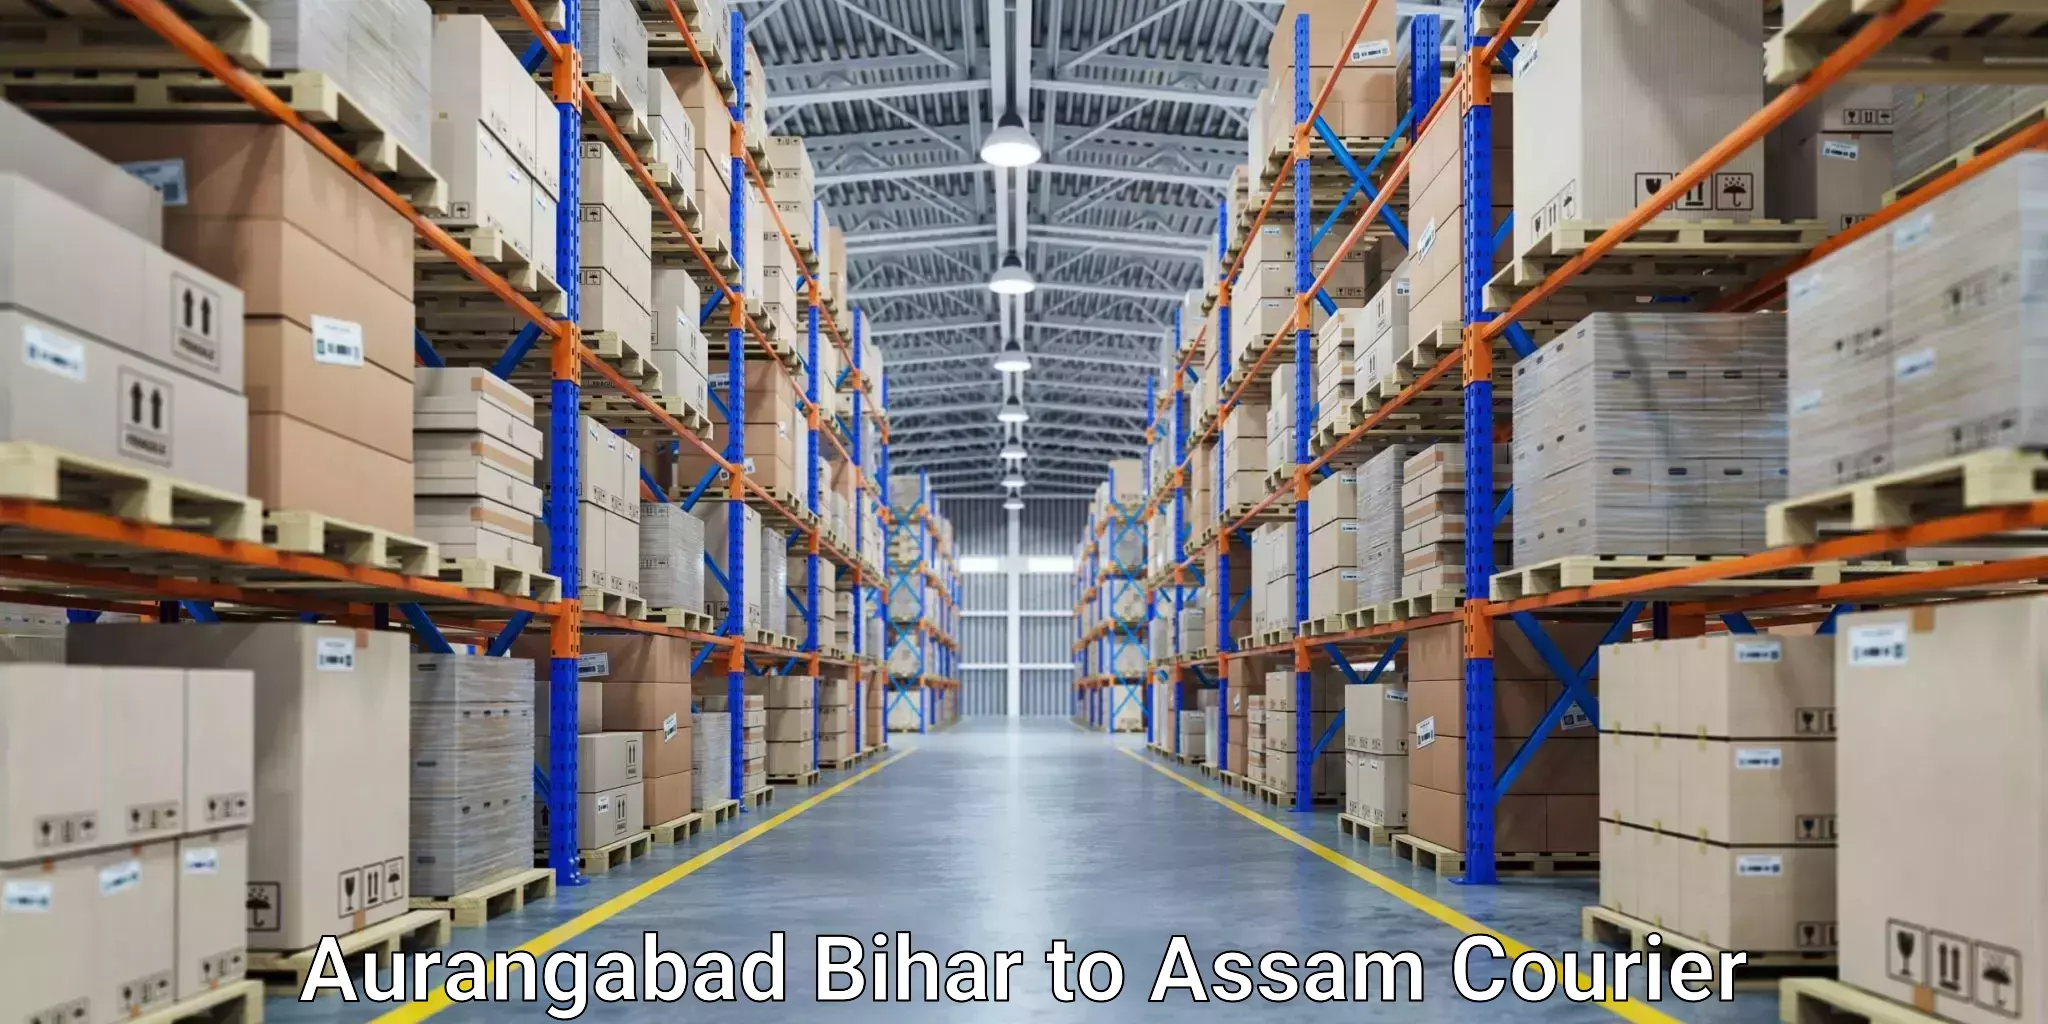 Business delivery service in Aurangabad Bihar to Bijni